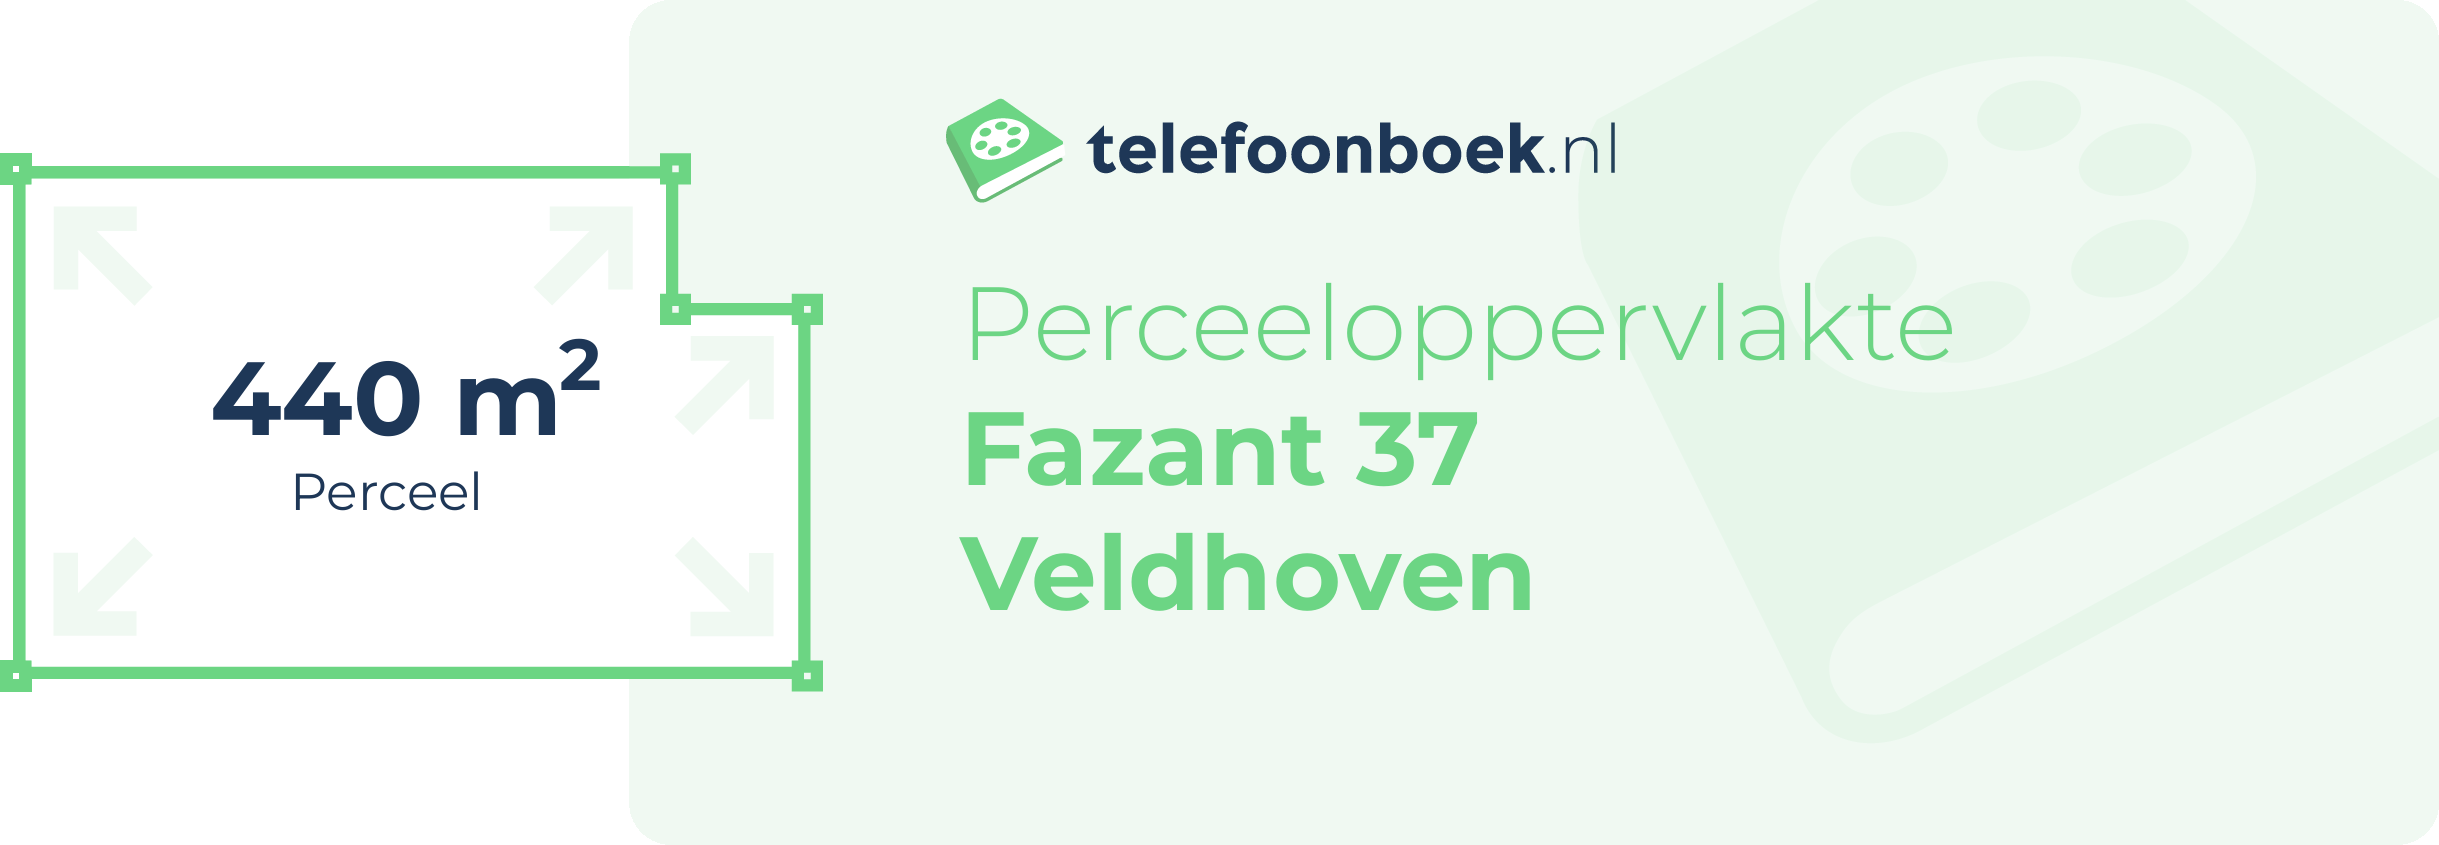 Perceeloppervlakte Fazant 37 Veldhoven